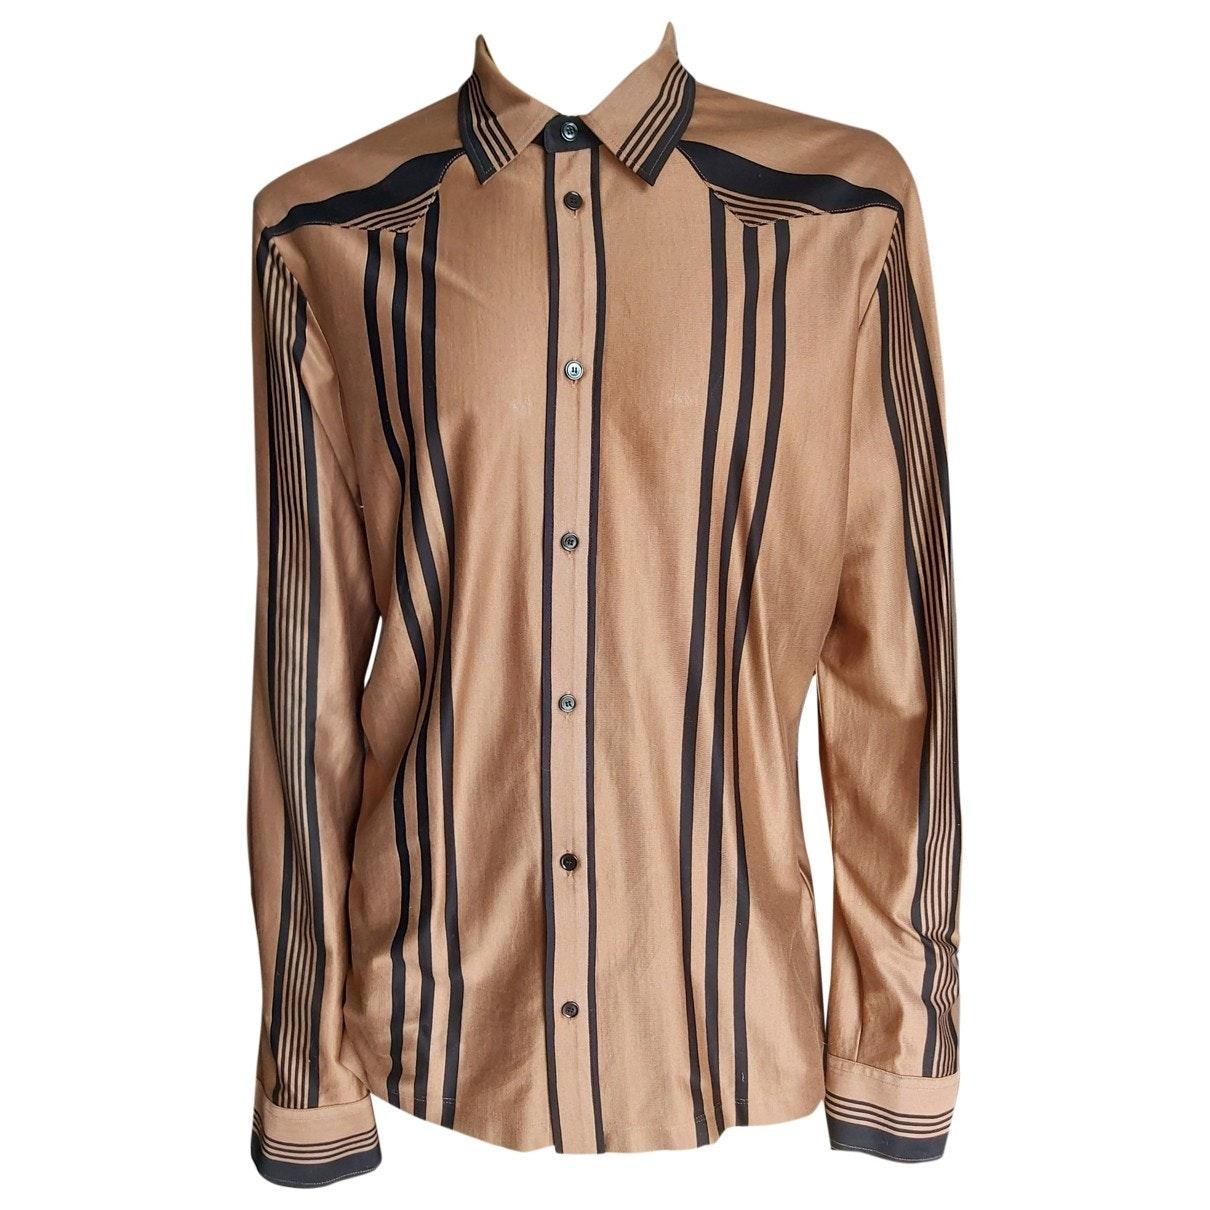 Bottega Veneta Cotton Shirt in Brown for Men - Lyst